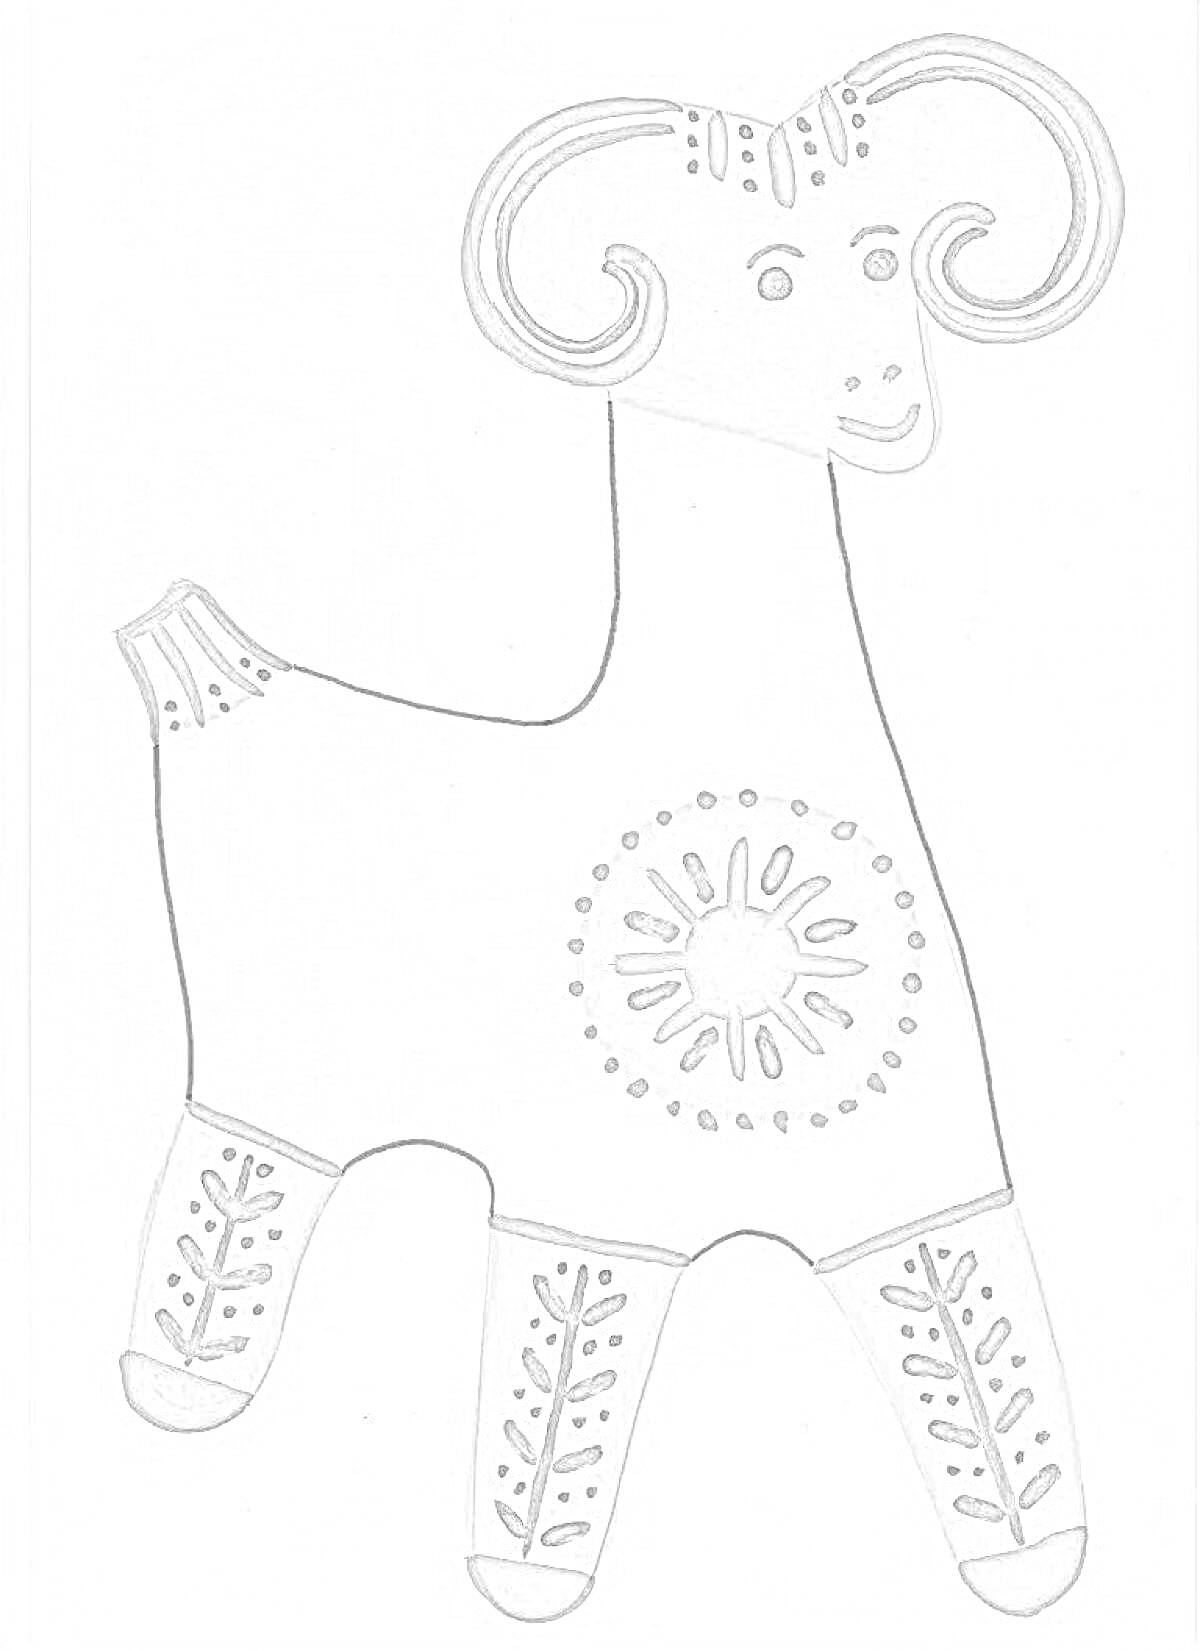 Раскраска Филимоновская игрушка - баран с узорами на ногах и туловище, с рогами, расписанными узорами